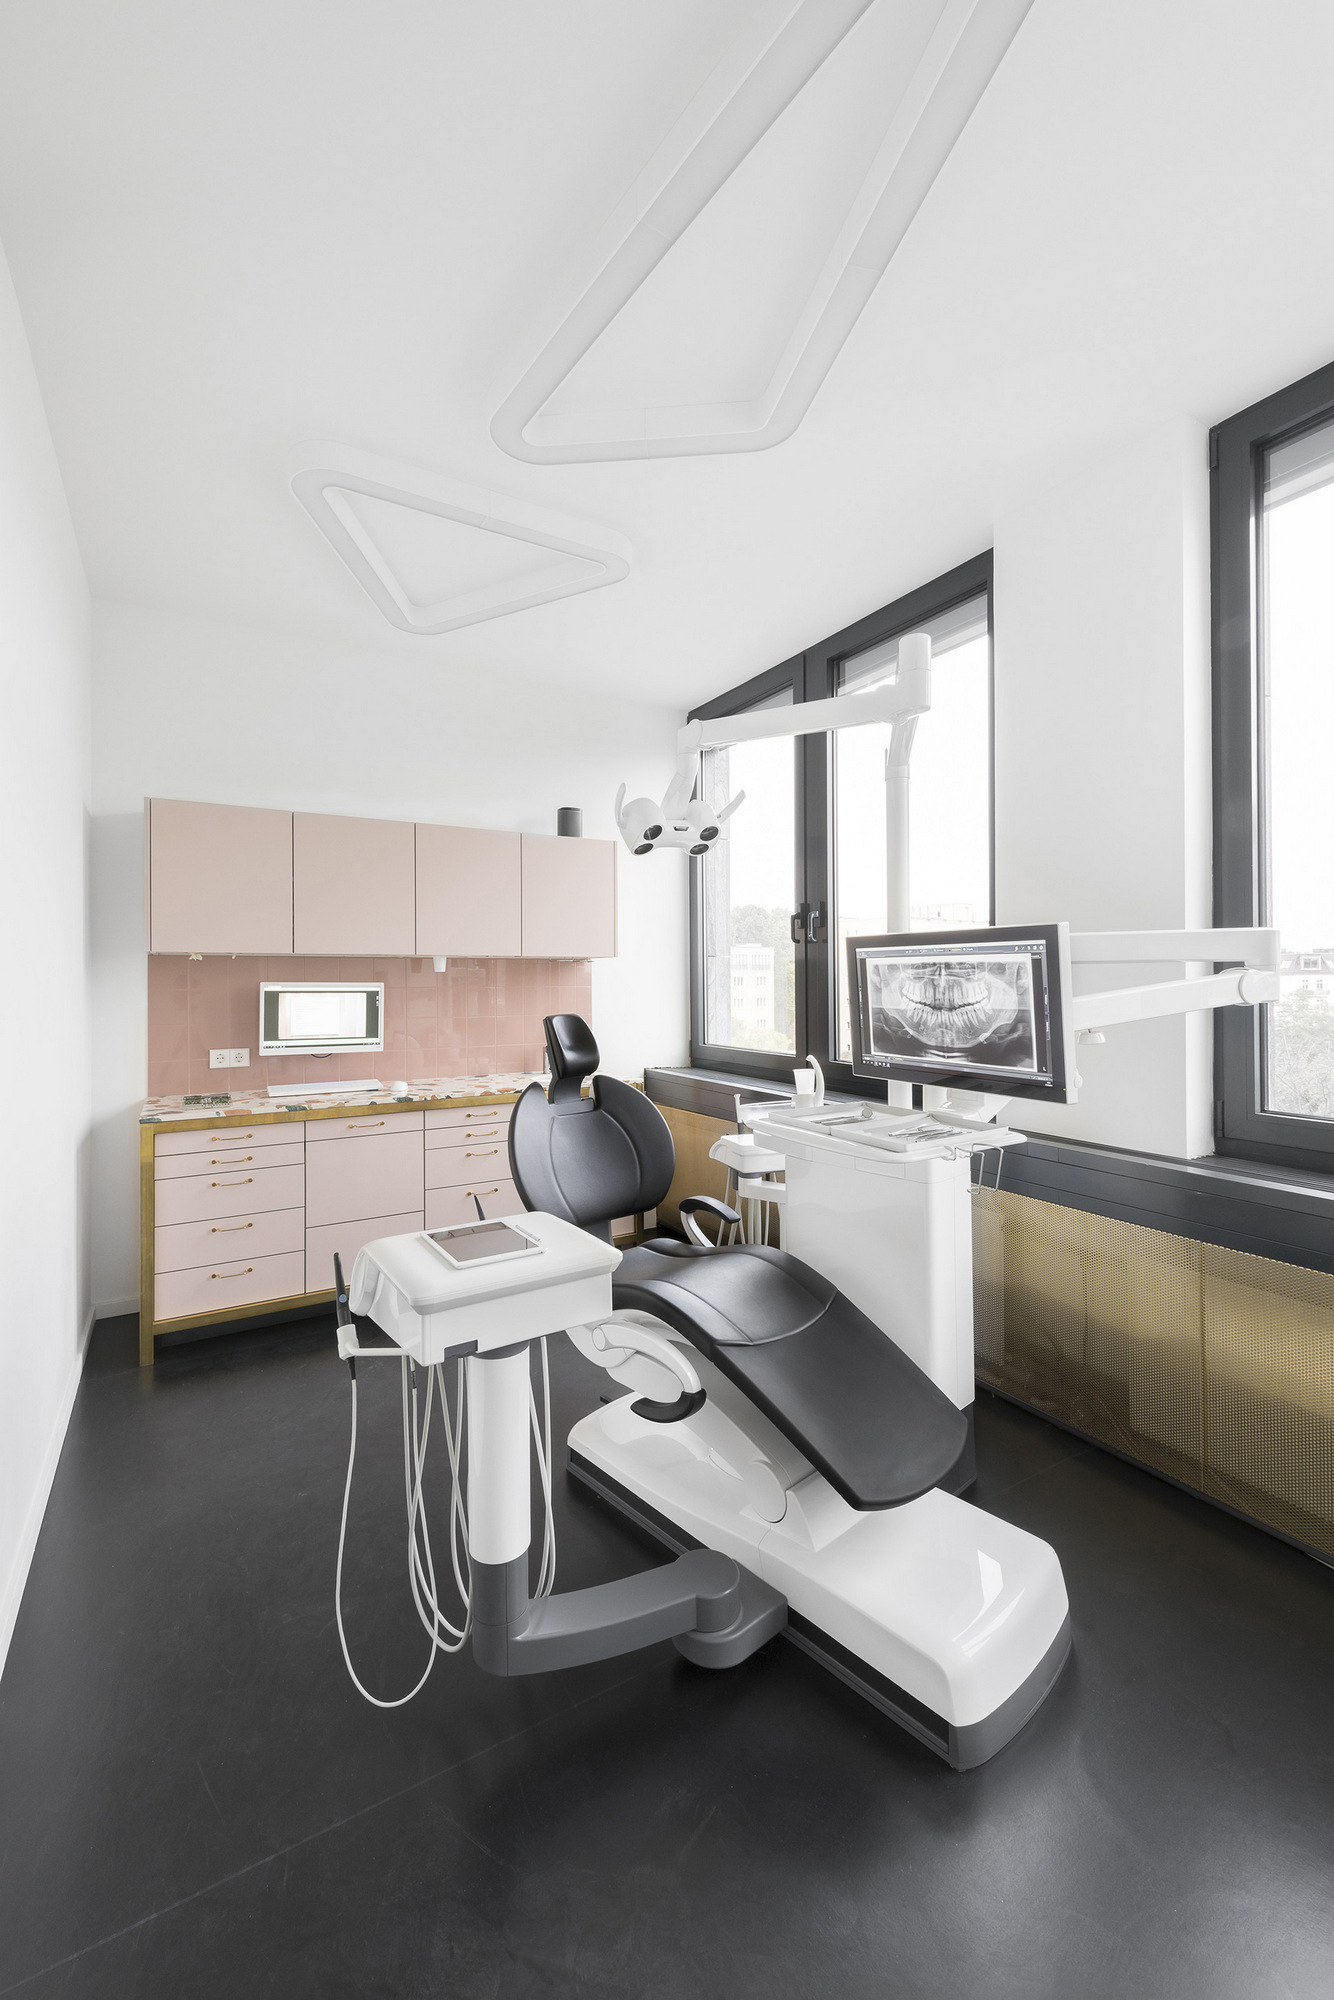 图片[10]|城市牙医|ART-Arrakis | 建筑室内设计的创新与灵感